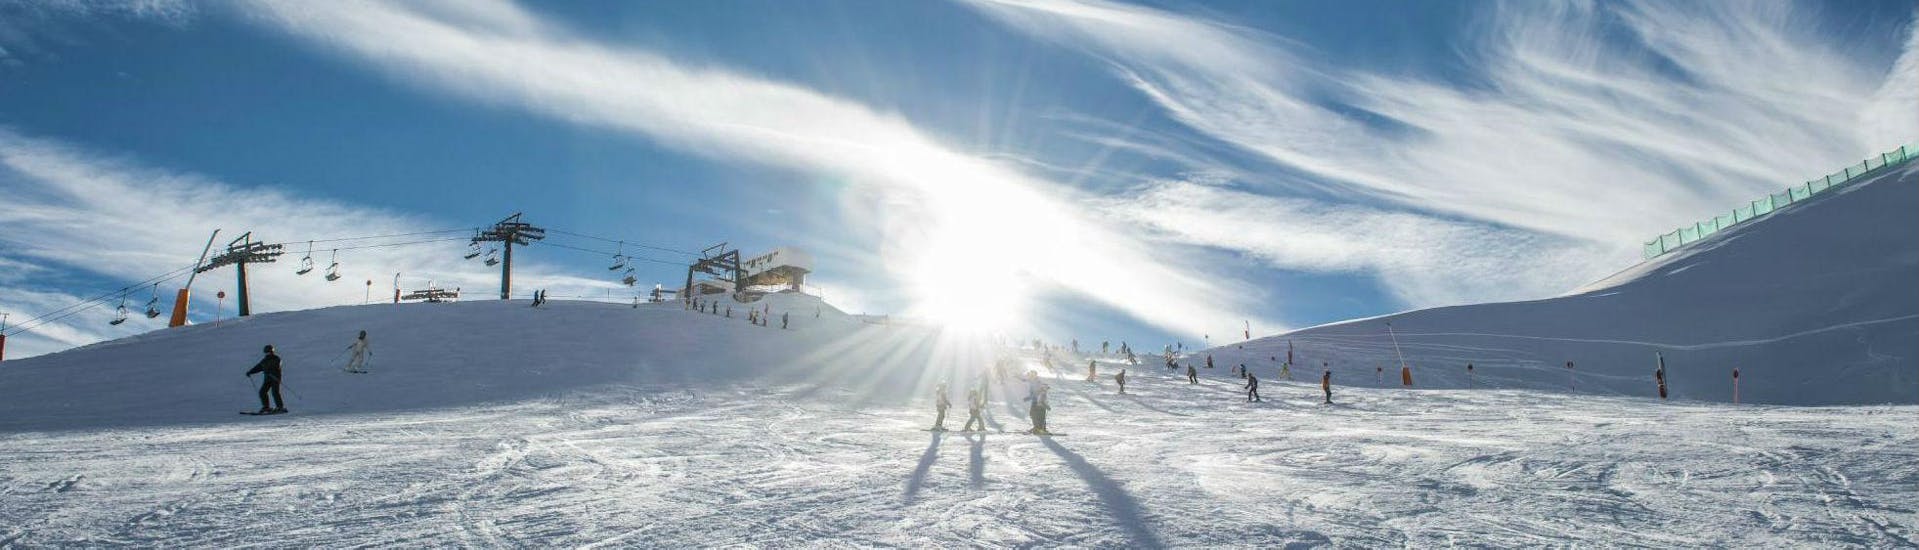 Skilessen voor volwassenen - ervaren.